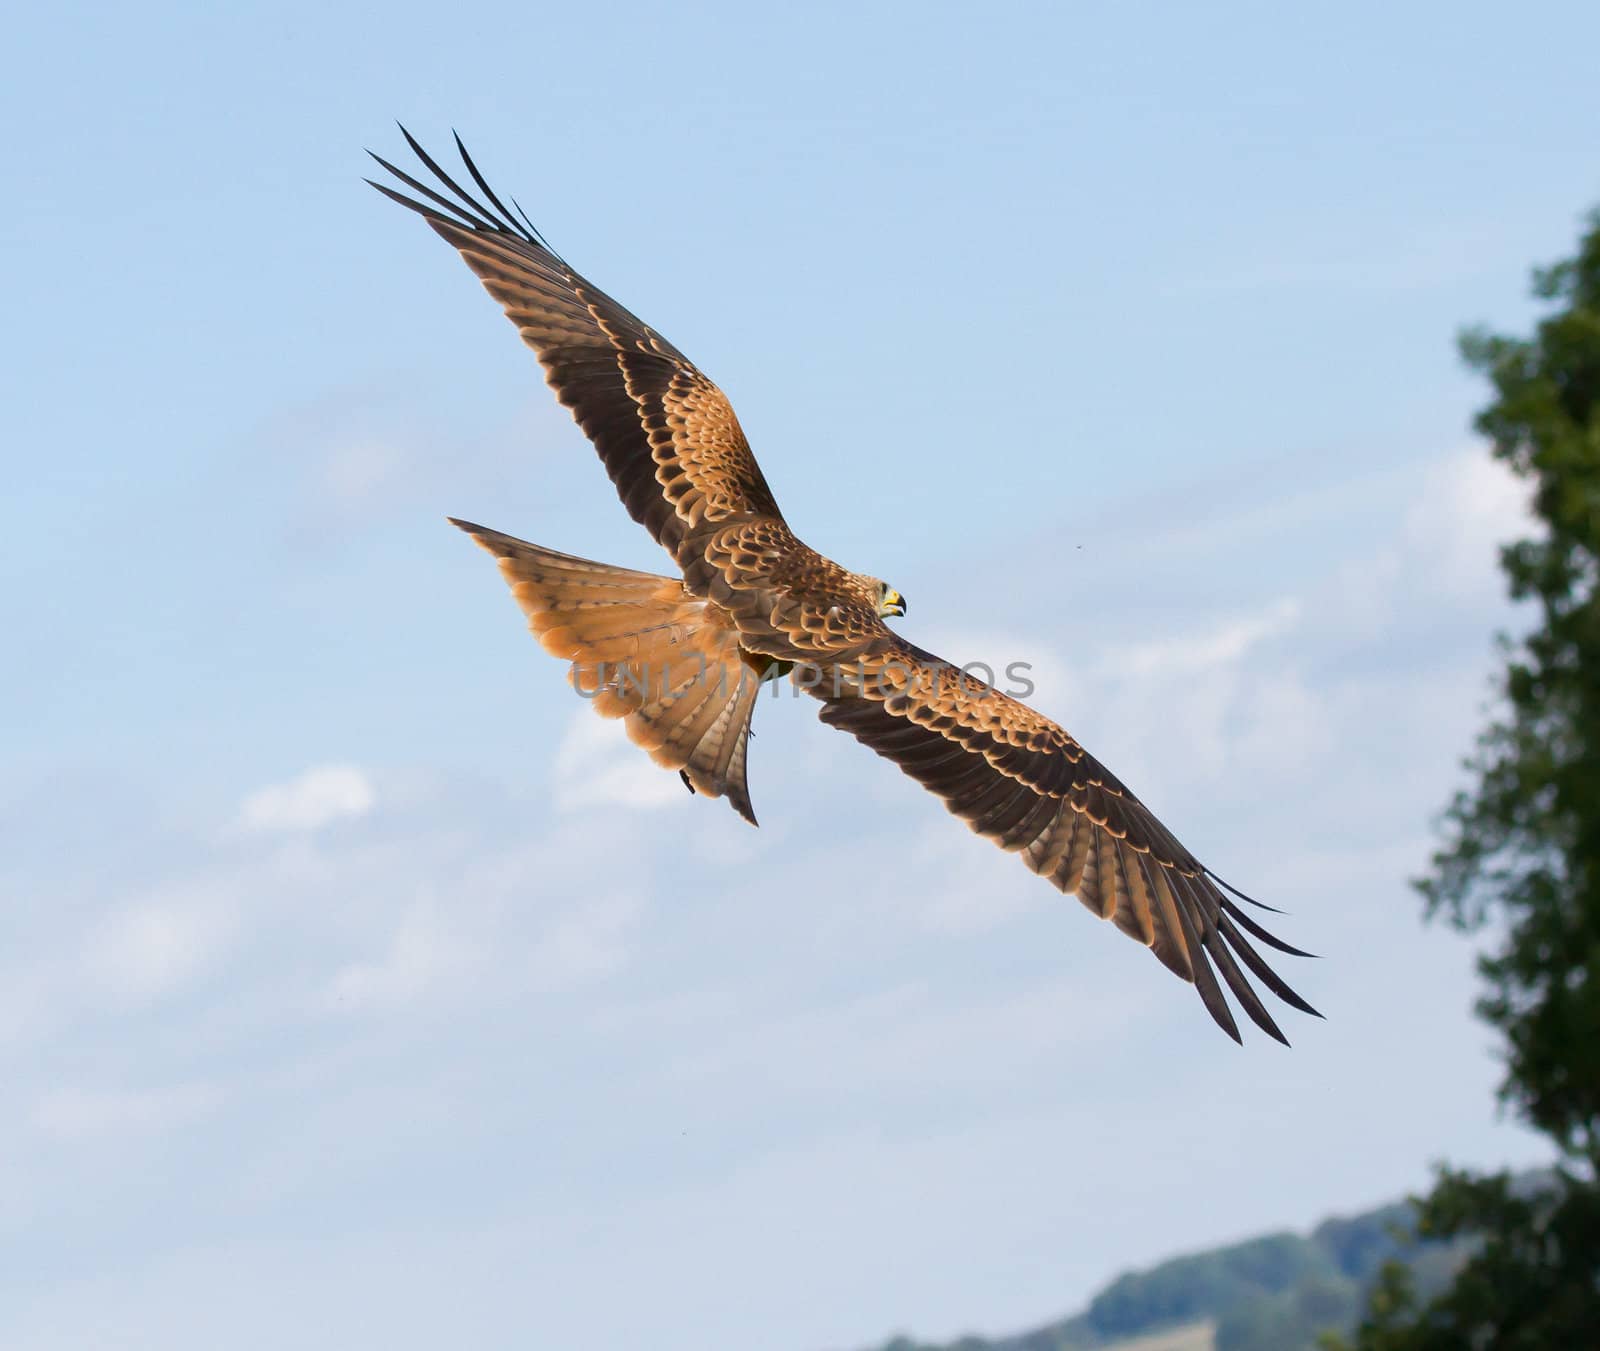 A long-legged buzzard in the sky